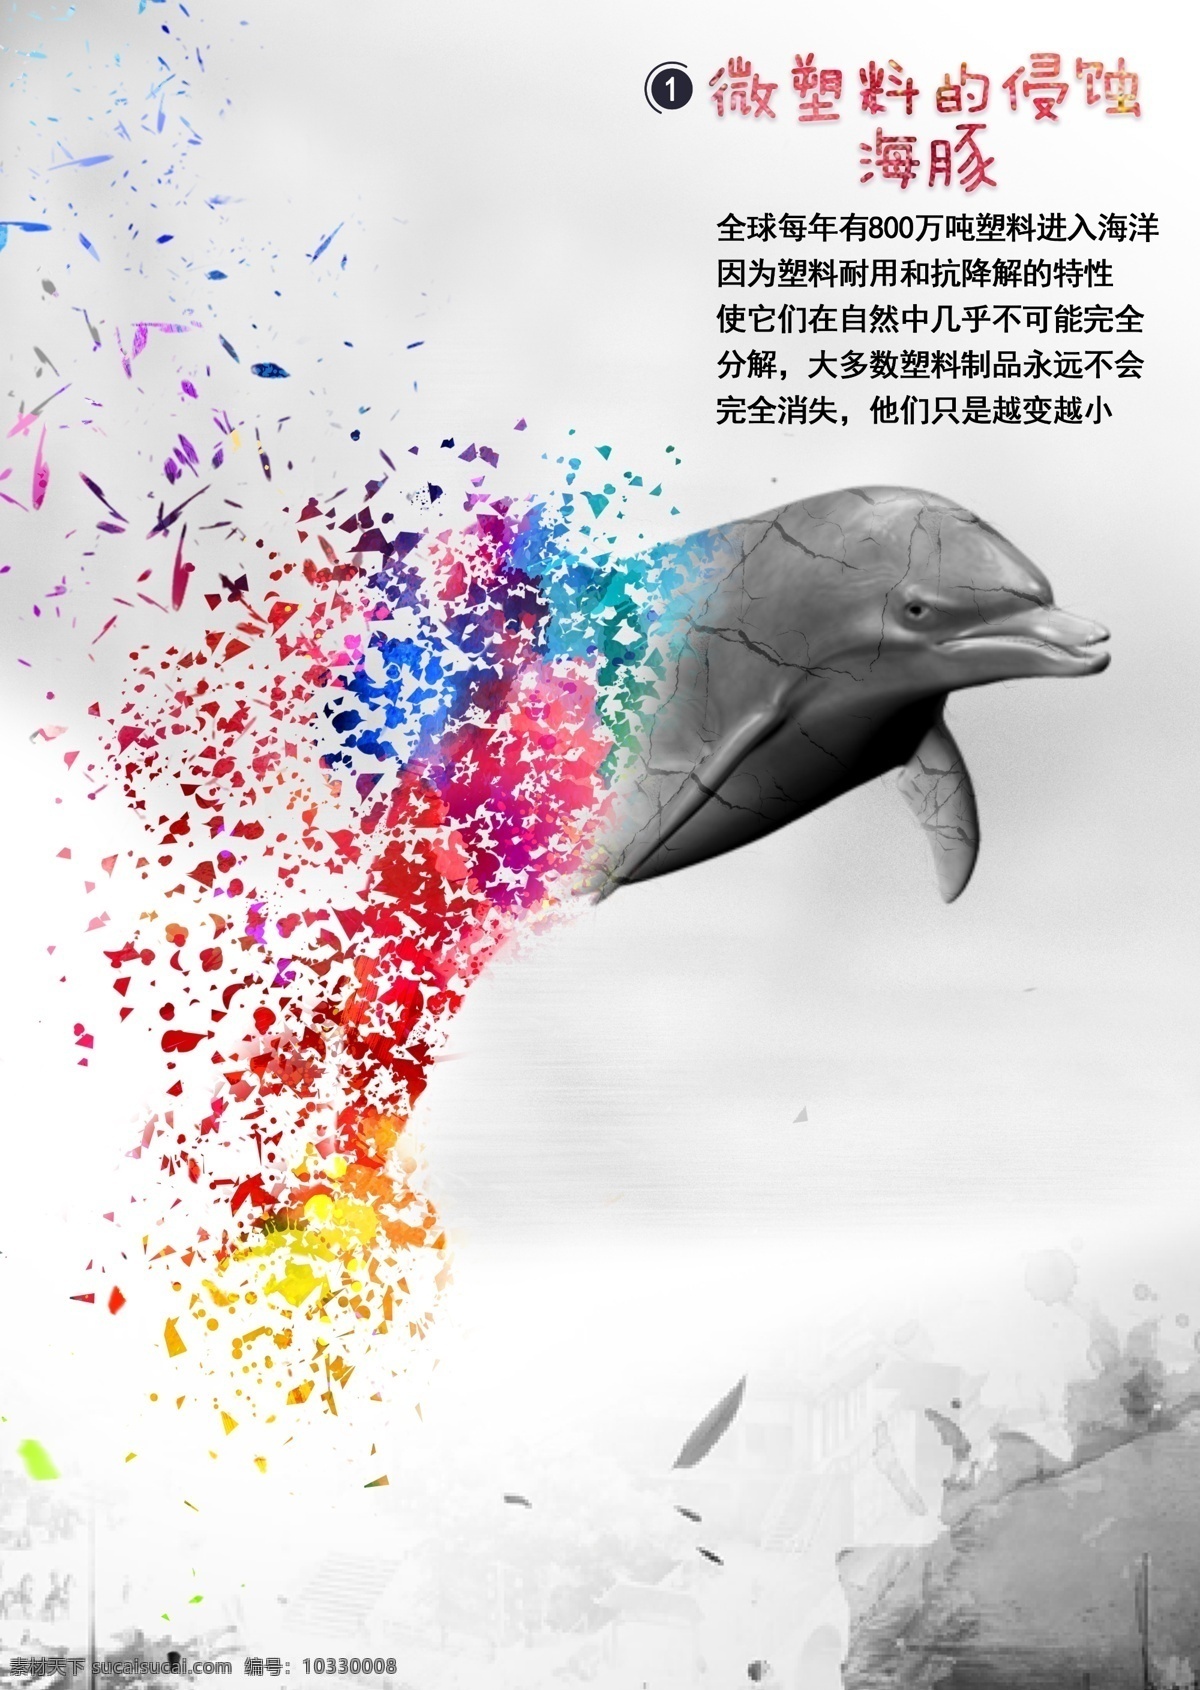 微 塑料 侵蚀 海豚 海报 海洋 公益 宣传 展板 污染 保护